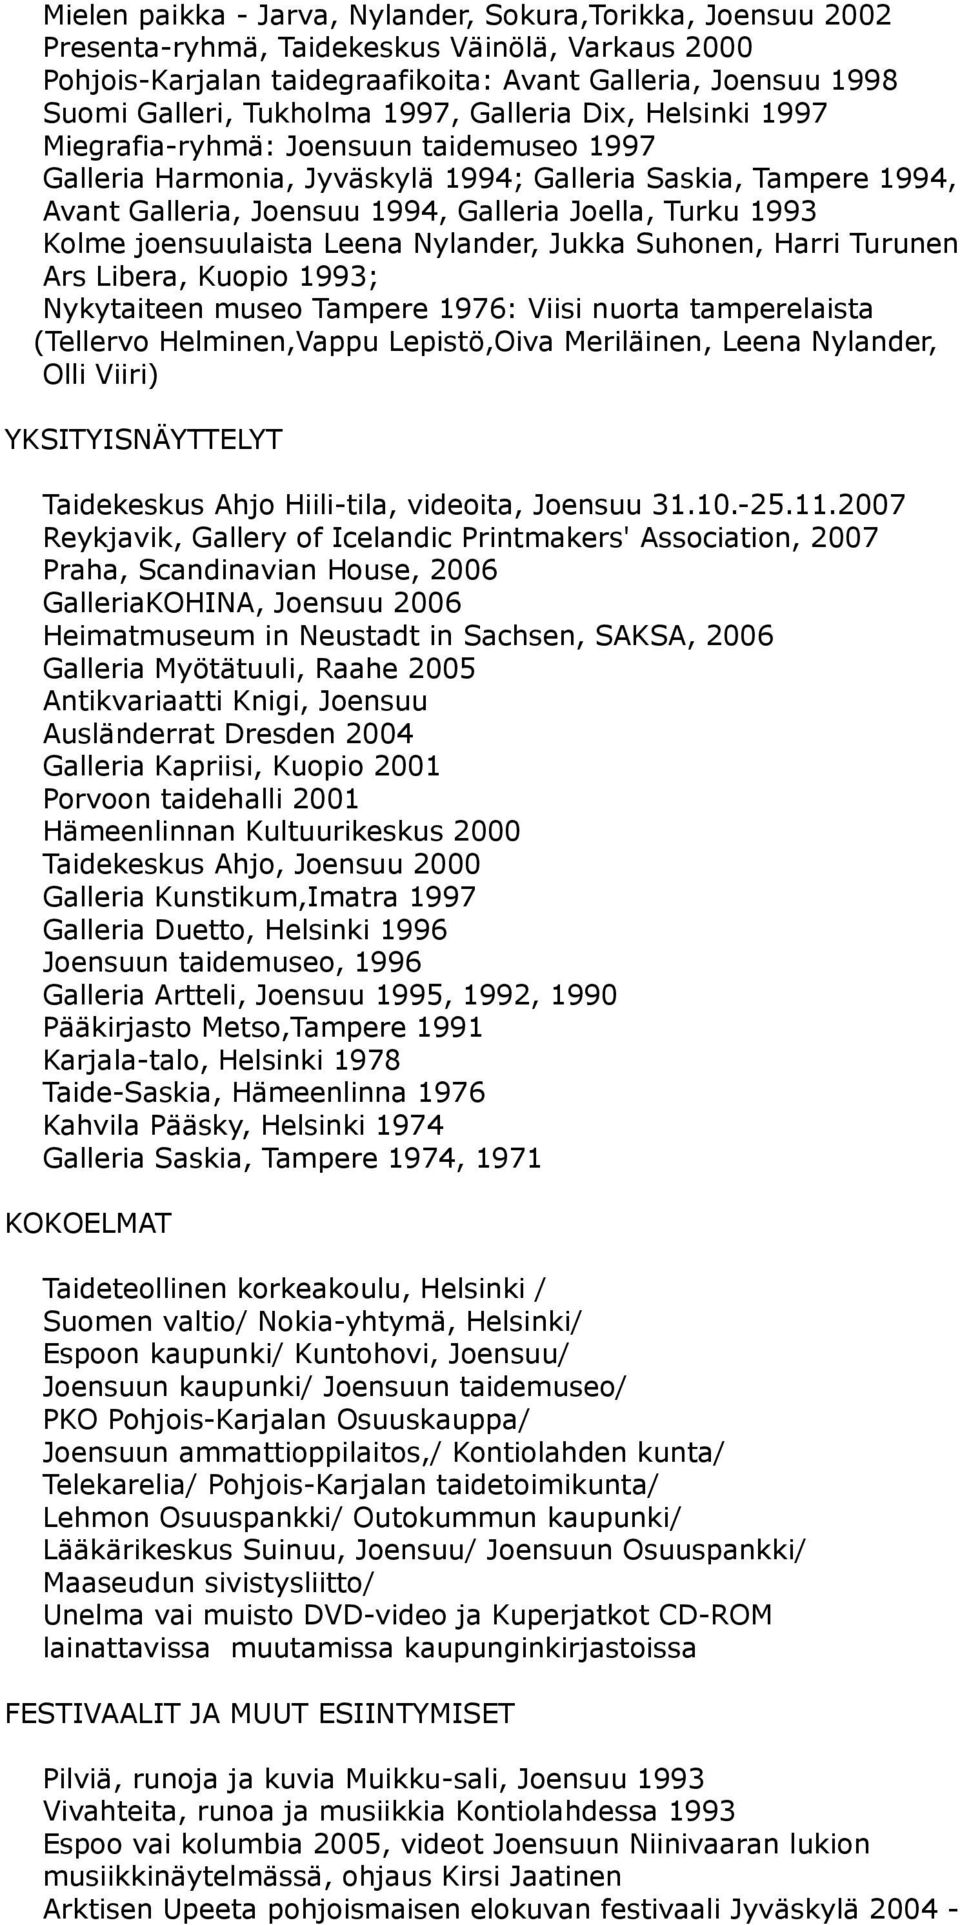 Kolme joensuulaista Leena Nylander, Jukka Suhonen, Harri Turunen Ars Libera, Kuopio 1993; Nykytaiteen museo Tampere 1976: Viisi nuorta tamperelaista (Tellervo Helminen,Vappu Lepistö,Oiva Meriläinen,